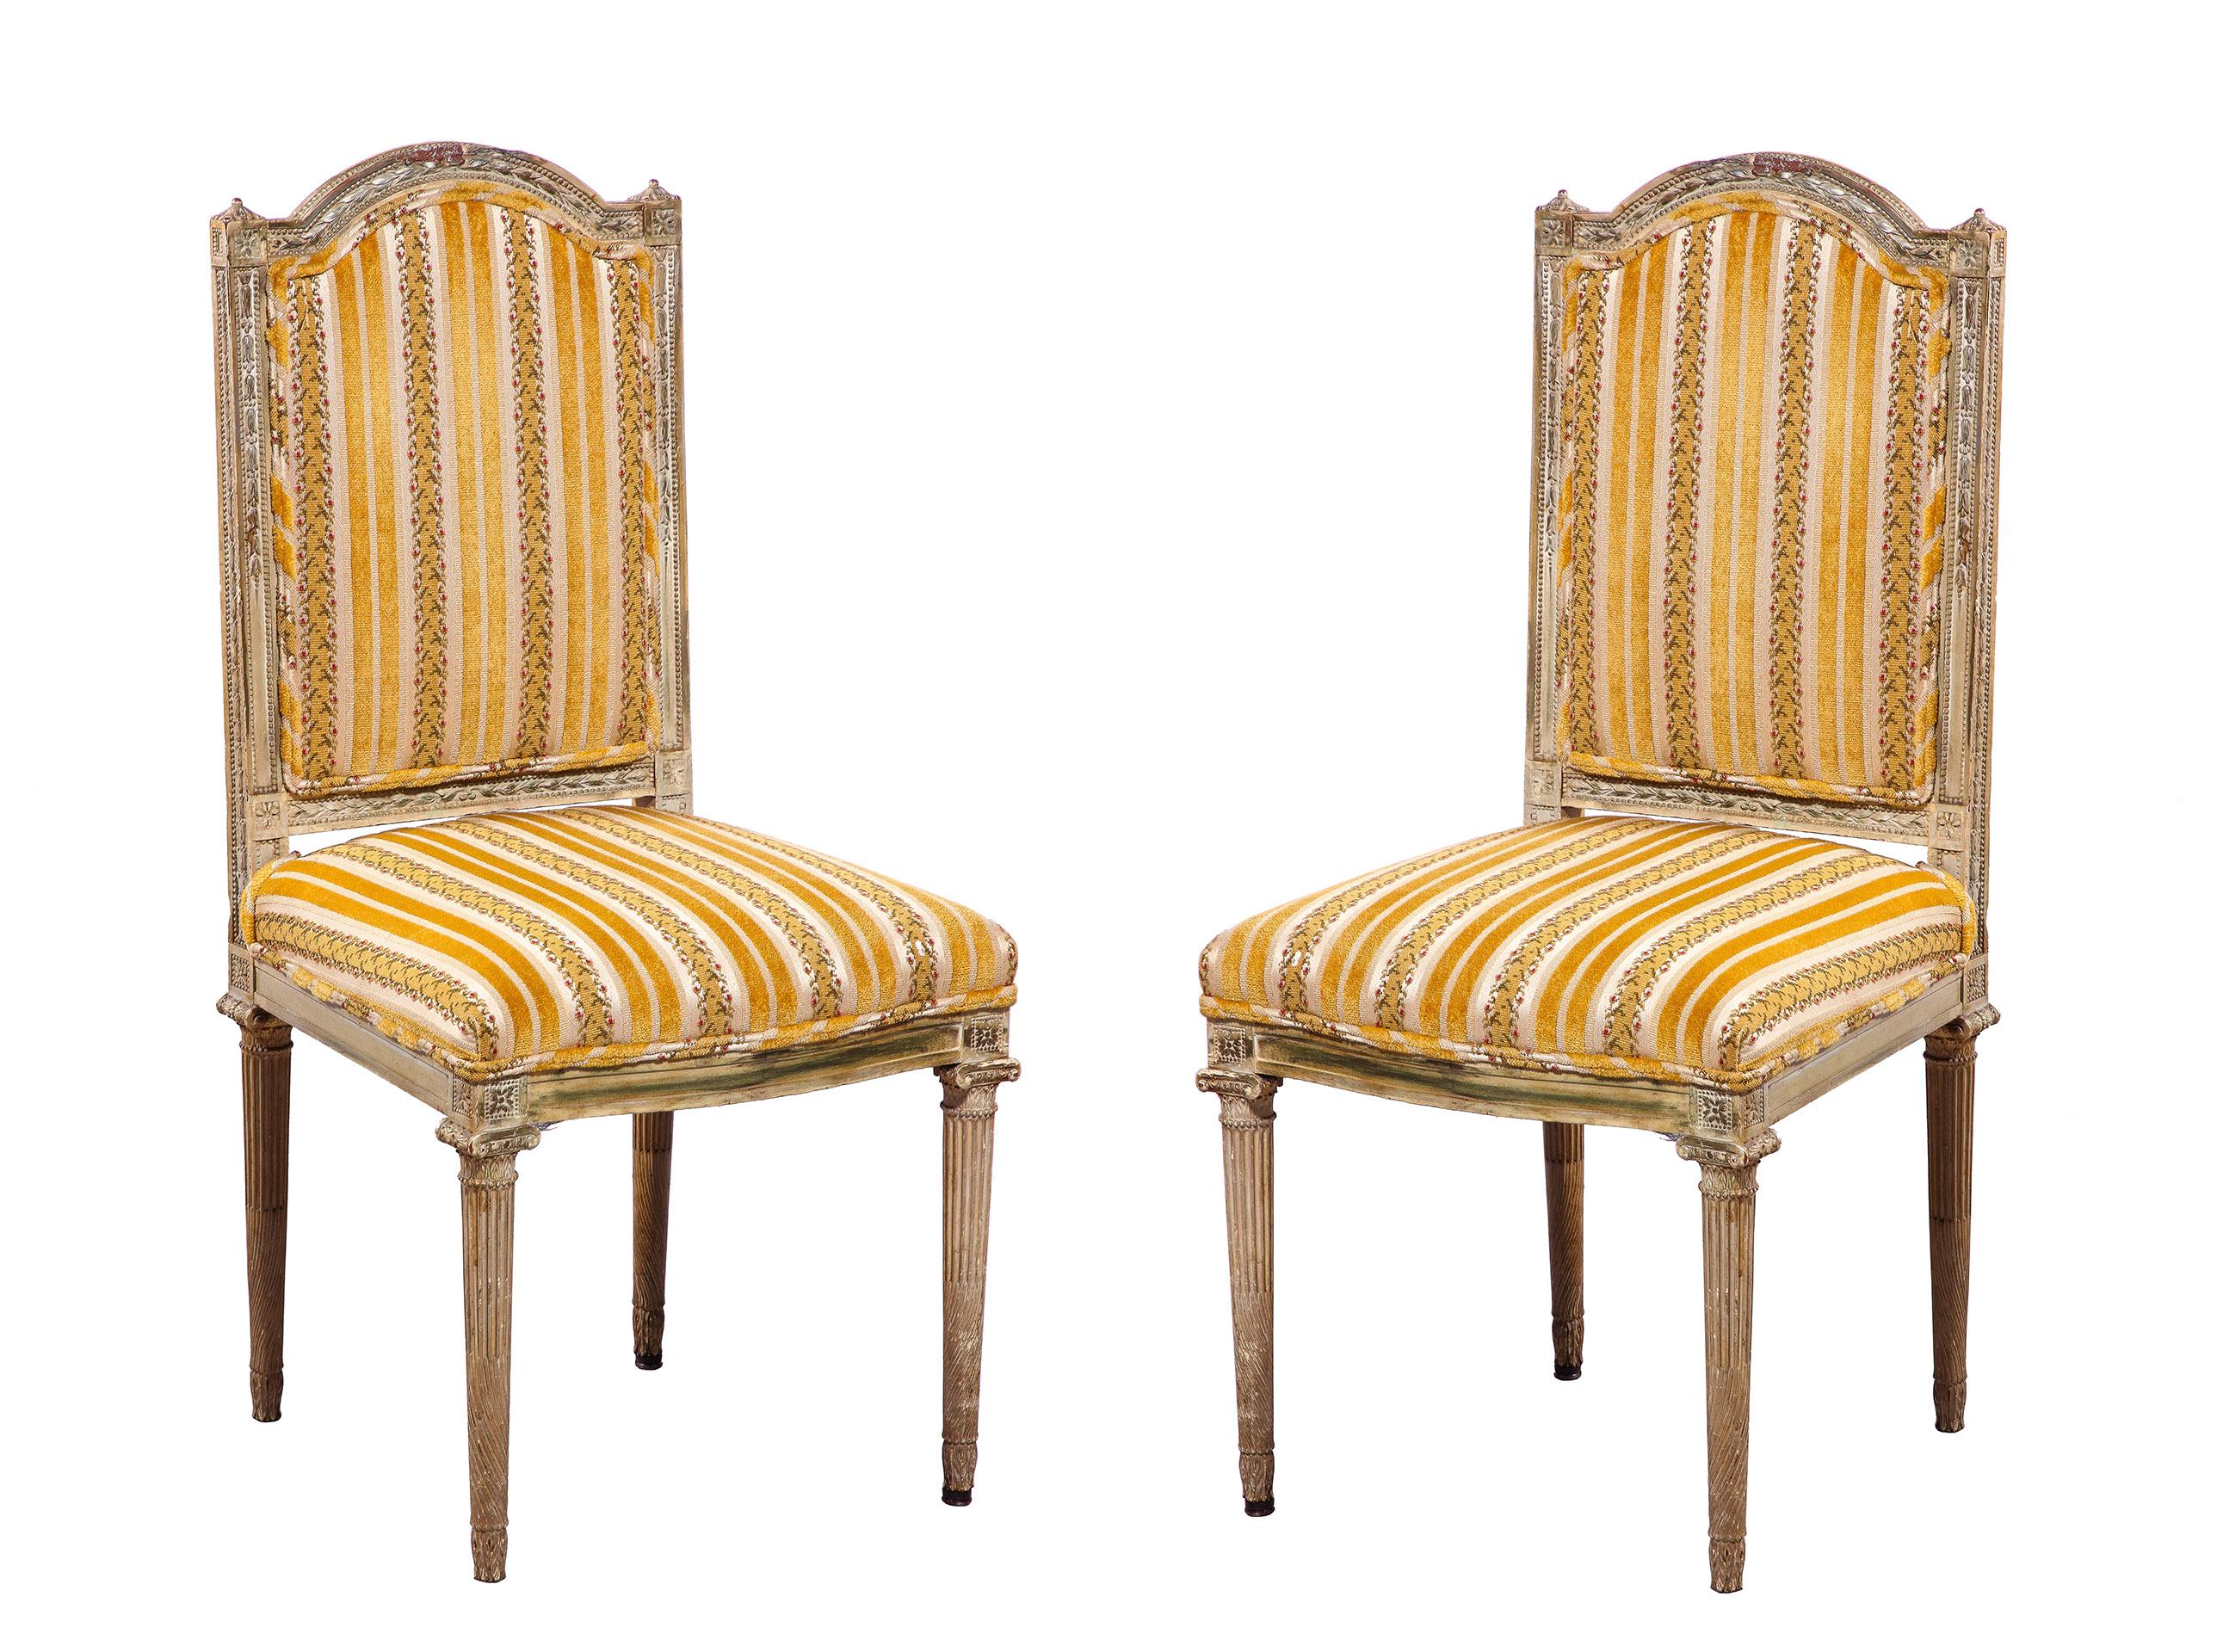 Cette paire de chaises d'appoint de style Louis XVI présente un cadre sculpté entourant un dossier et un siège rembourrés, ainsi que des pieds cannelés. L'ensemble est recouvert d'une peinture d'origine à la belle patine délavée.